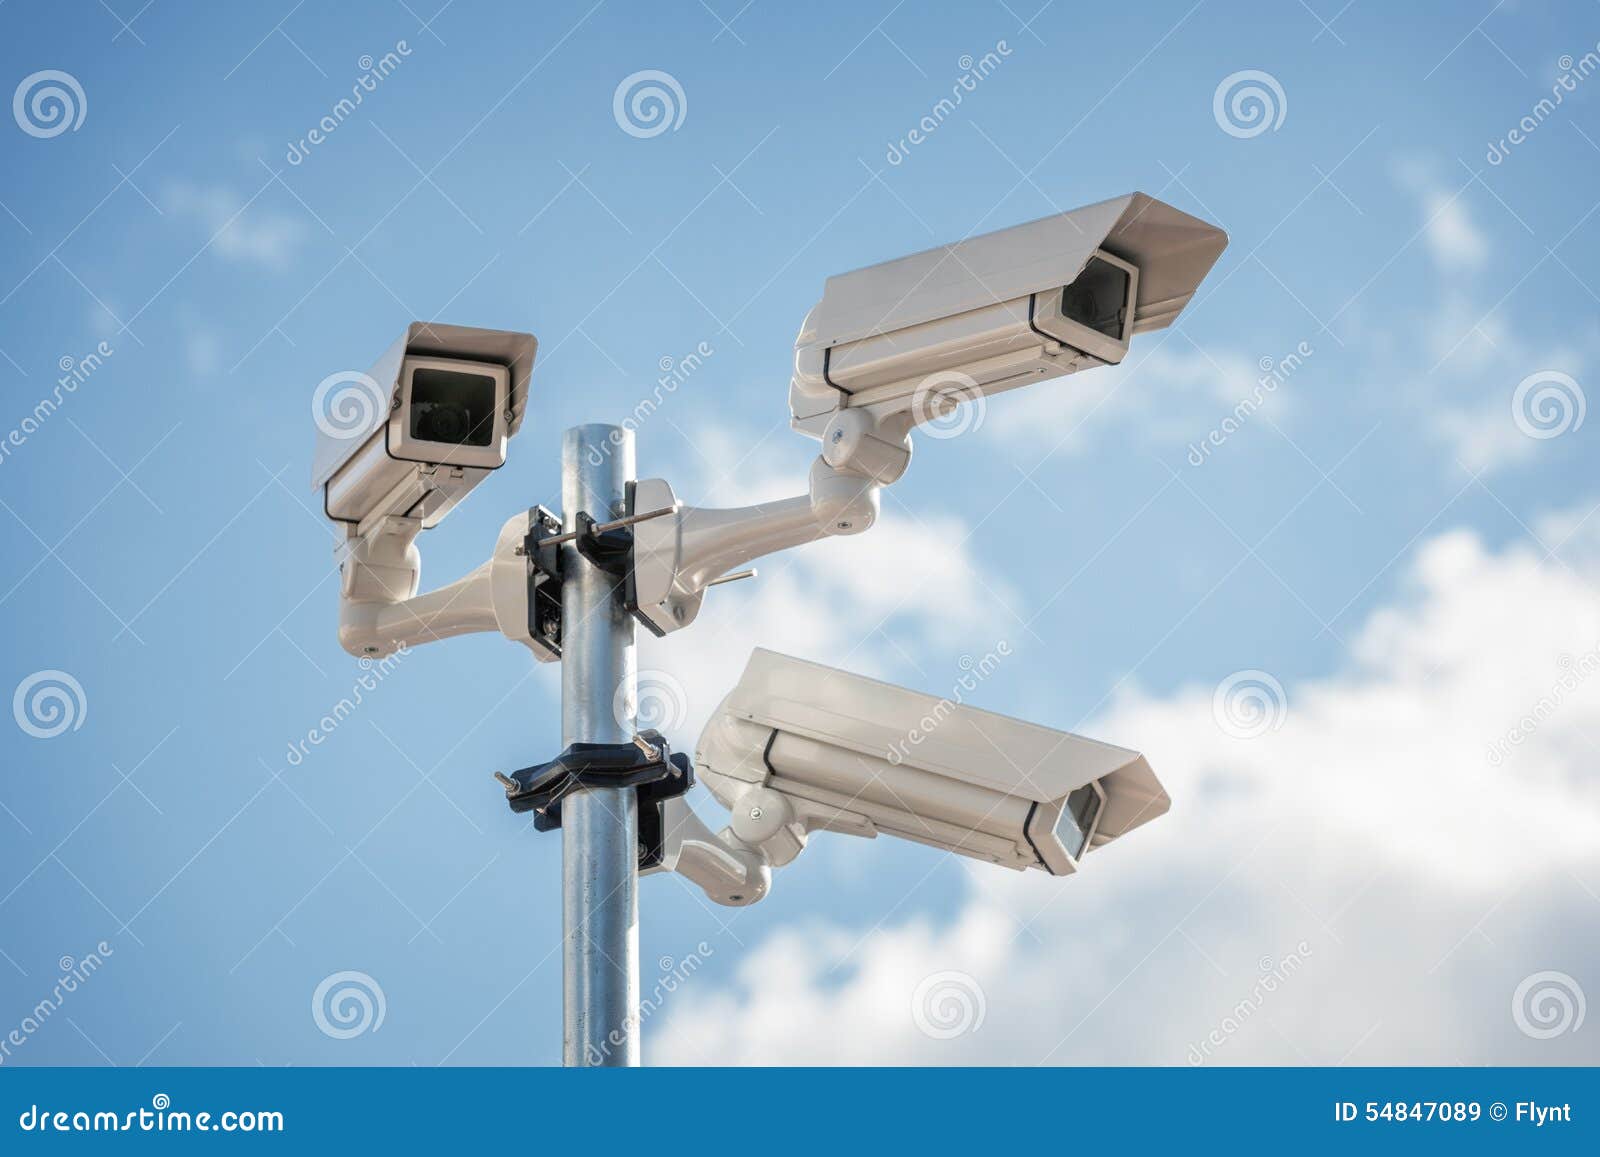 security cctv surveillance camera